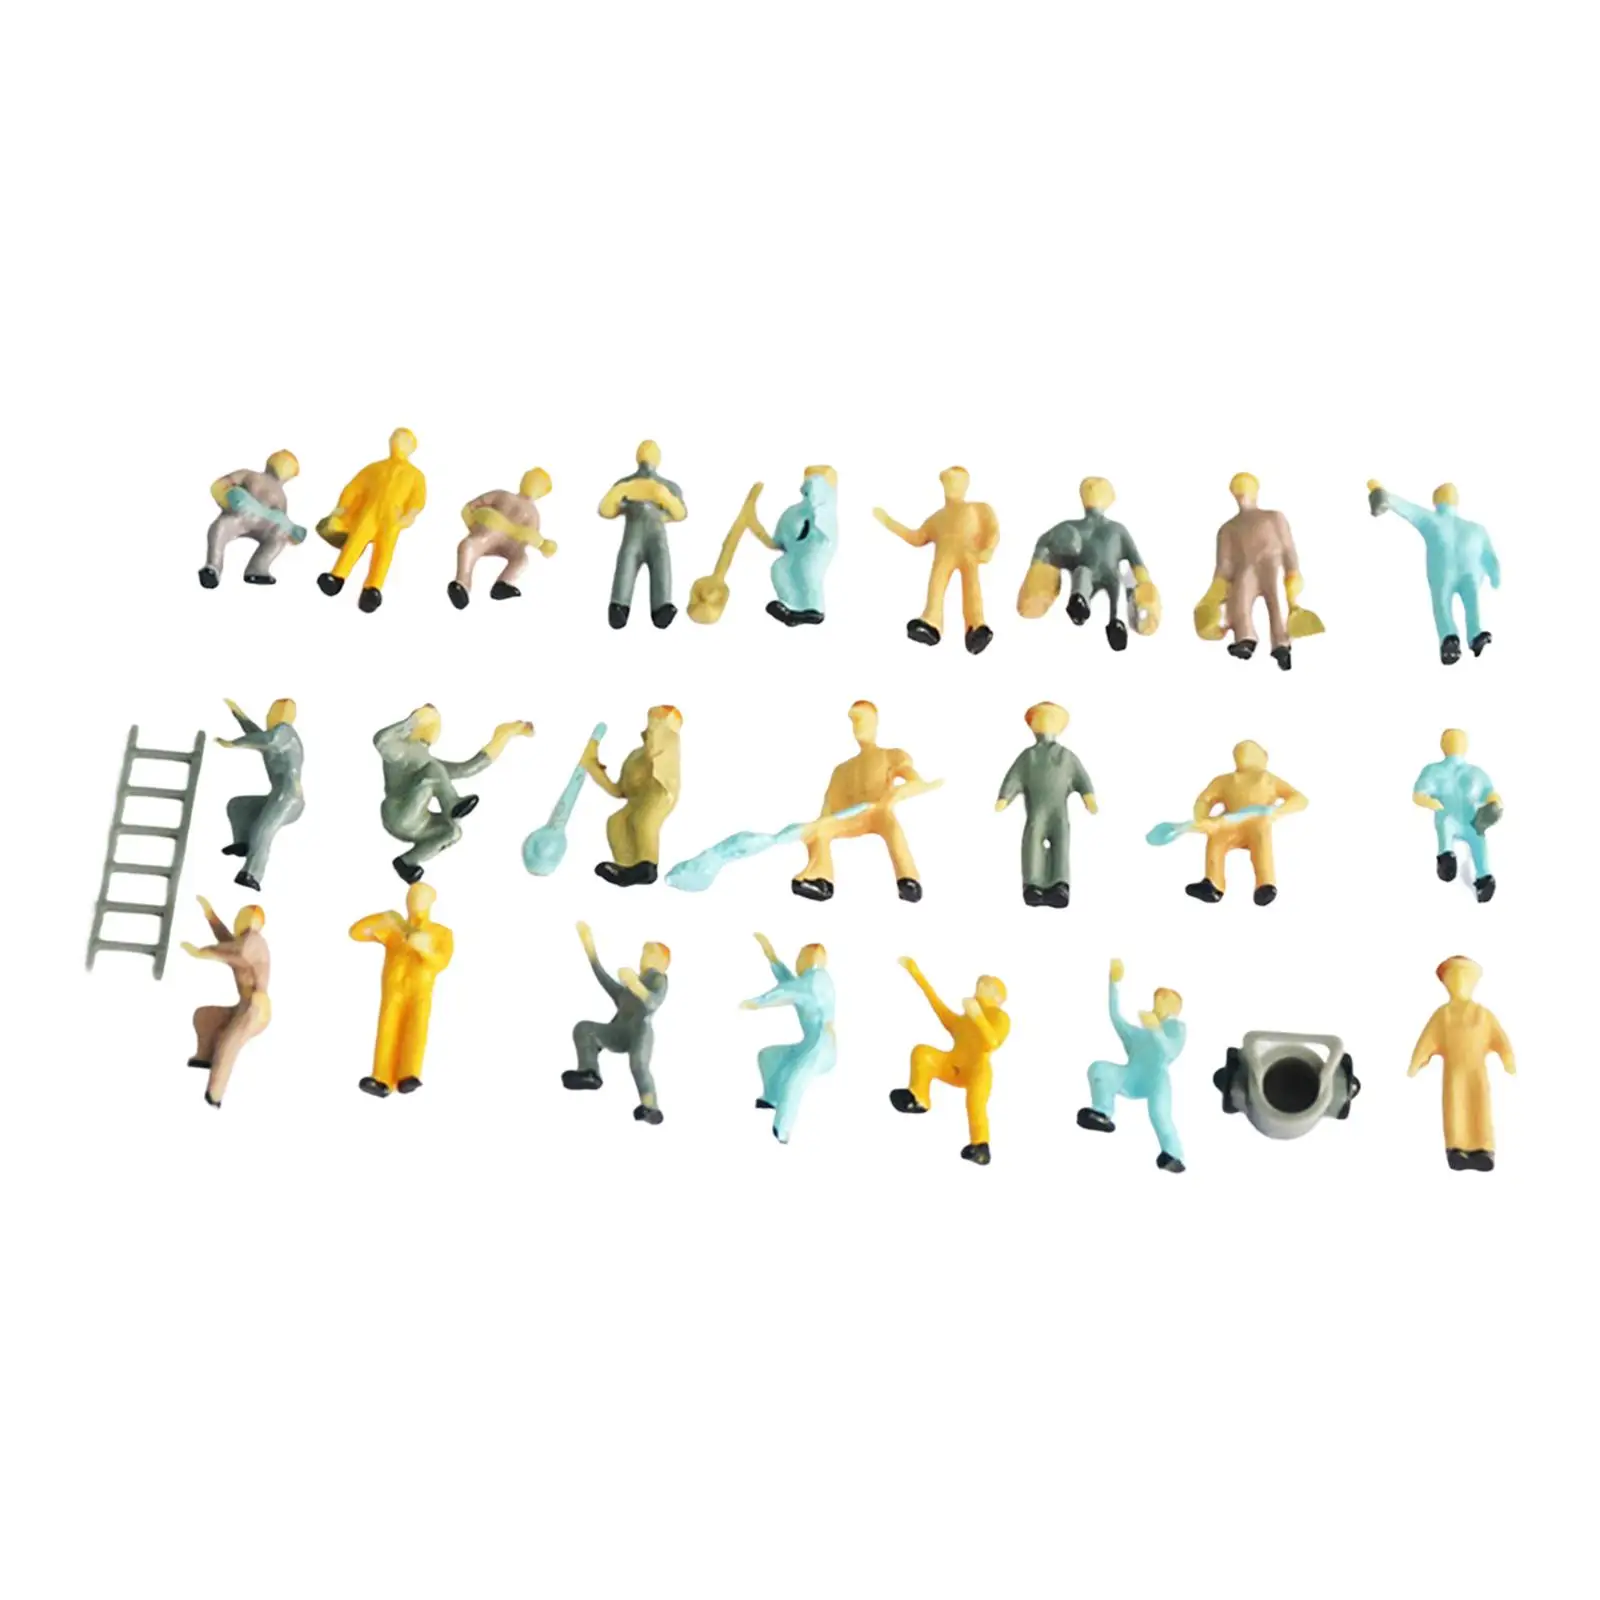 25Pcs 1/87 Miniature Model Railroad Worker Figures Building HO Scale Desktop Ornament Hand Painted Figurines Ornament Supplies